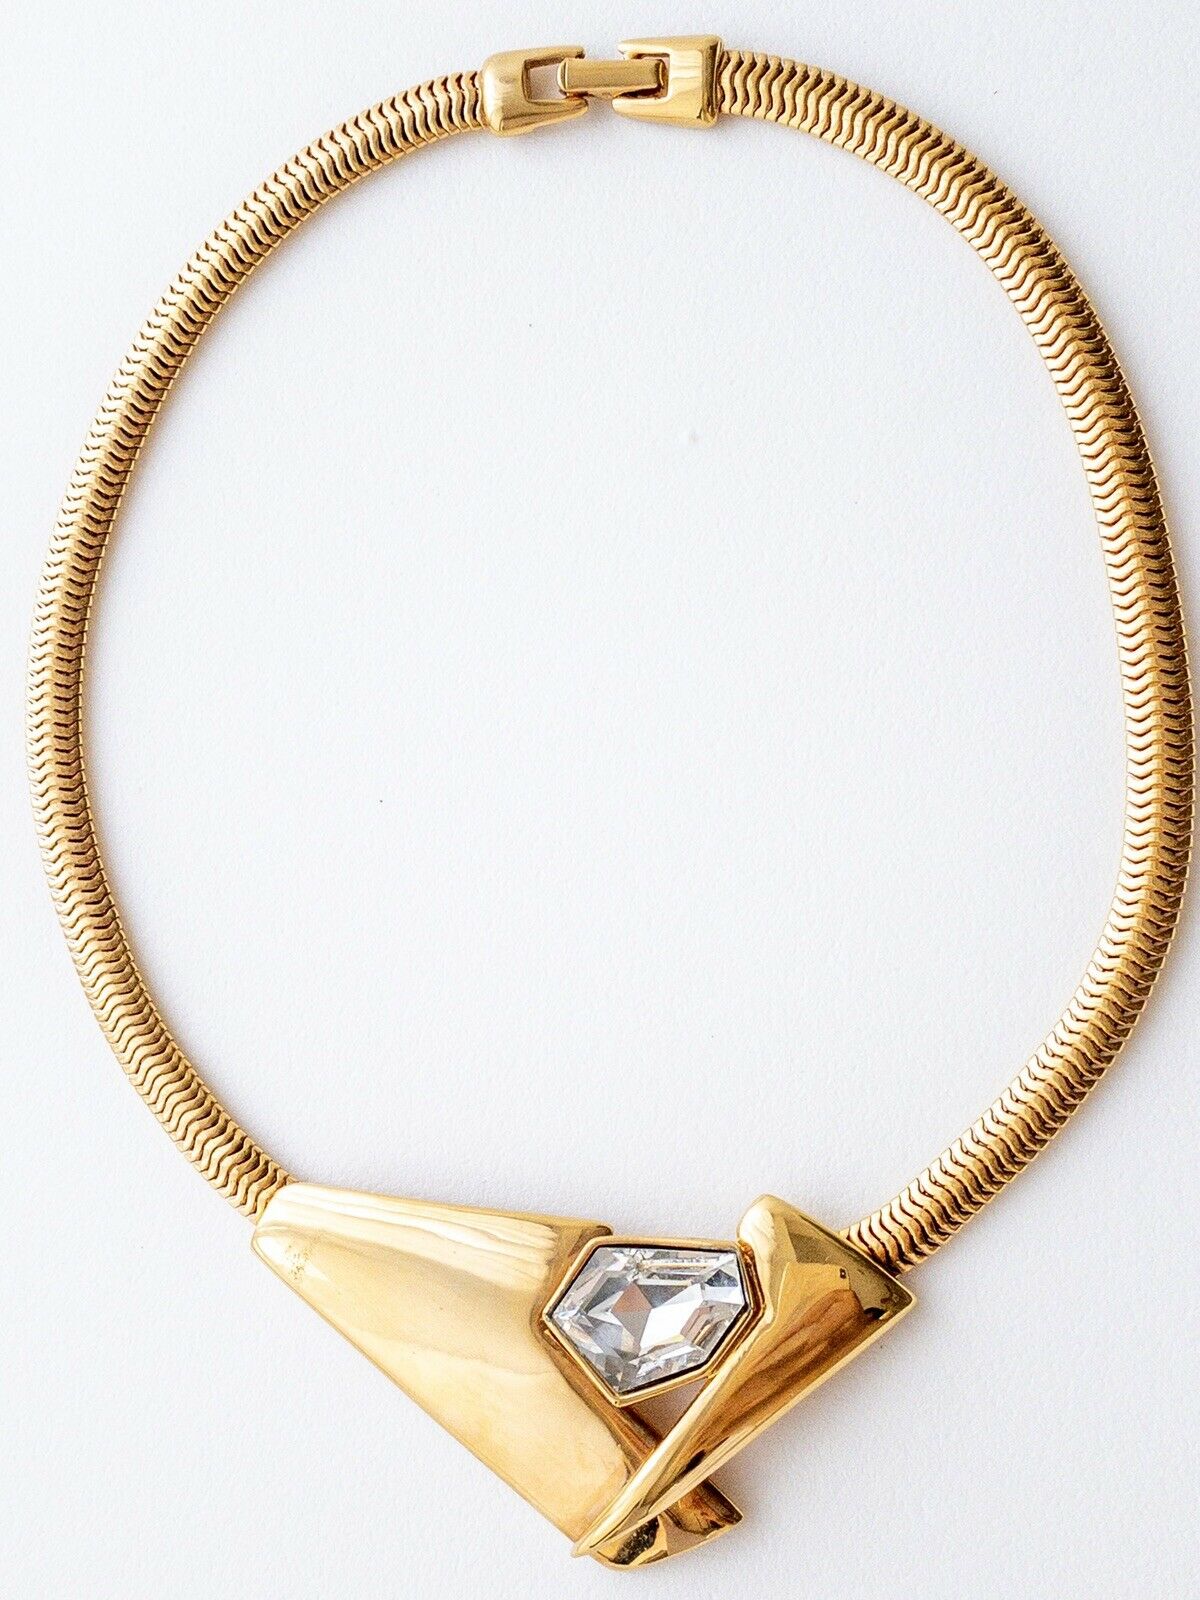 P&M Paris Massive Rhinestones Gold Tone Choker Necklace Vintage